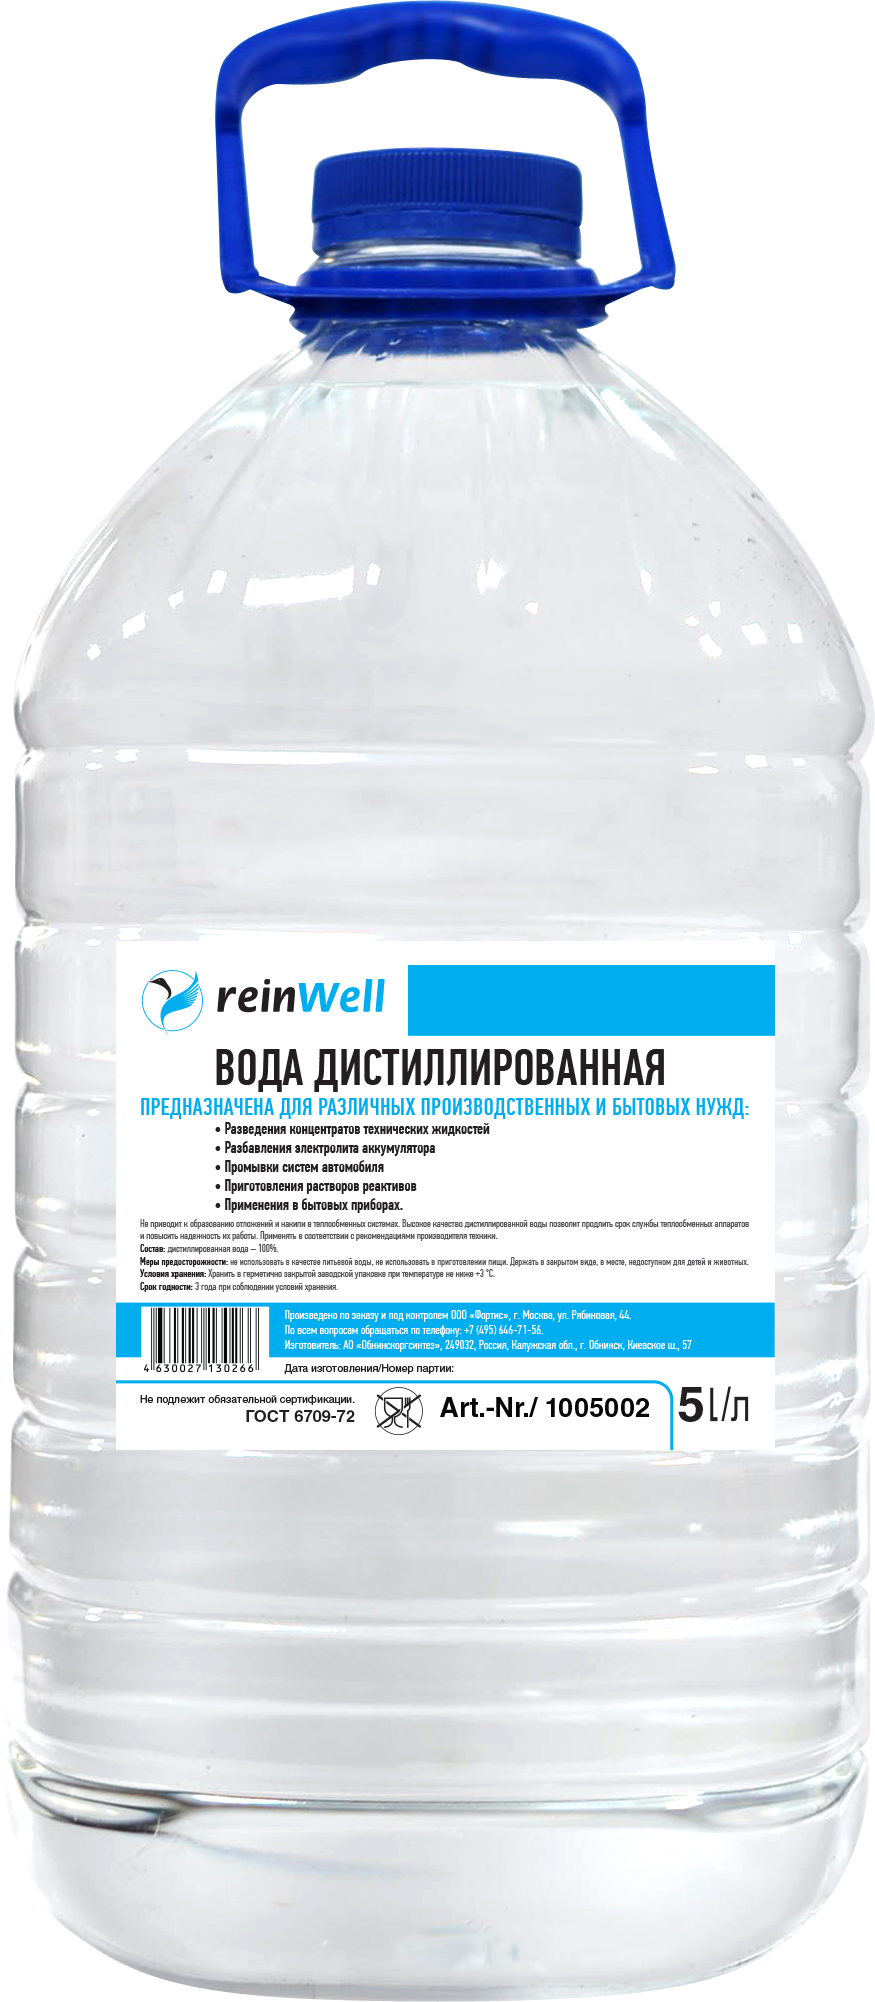 Вода дистиллированная REINWELL RW-02 4.8 кг (5 л). Дистиллированная вода REINWELL RW-02. Вода дистиллированная (1,5л) socralin. Дистиллированная вода (Сант-сервис) 5 л (4шт). Вода дистиллированная стерильная